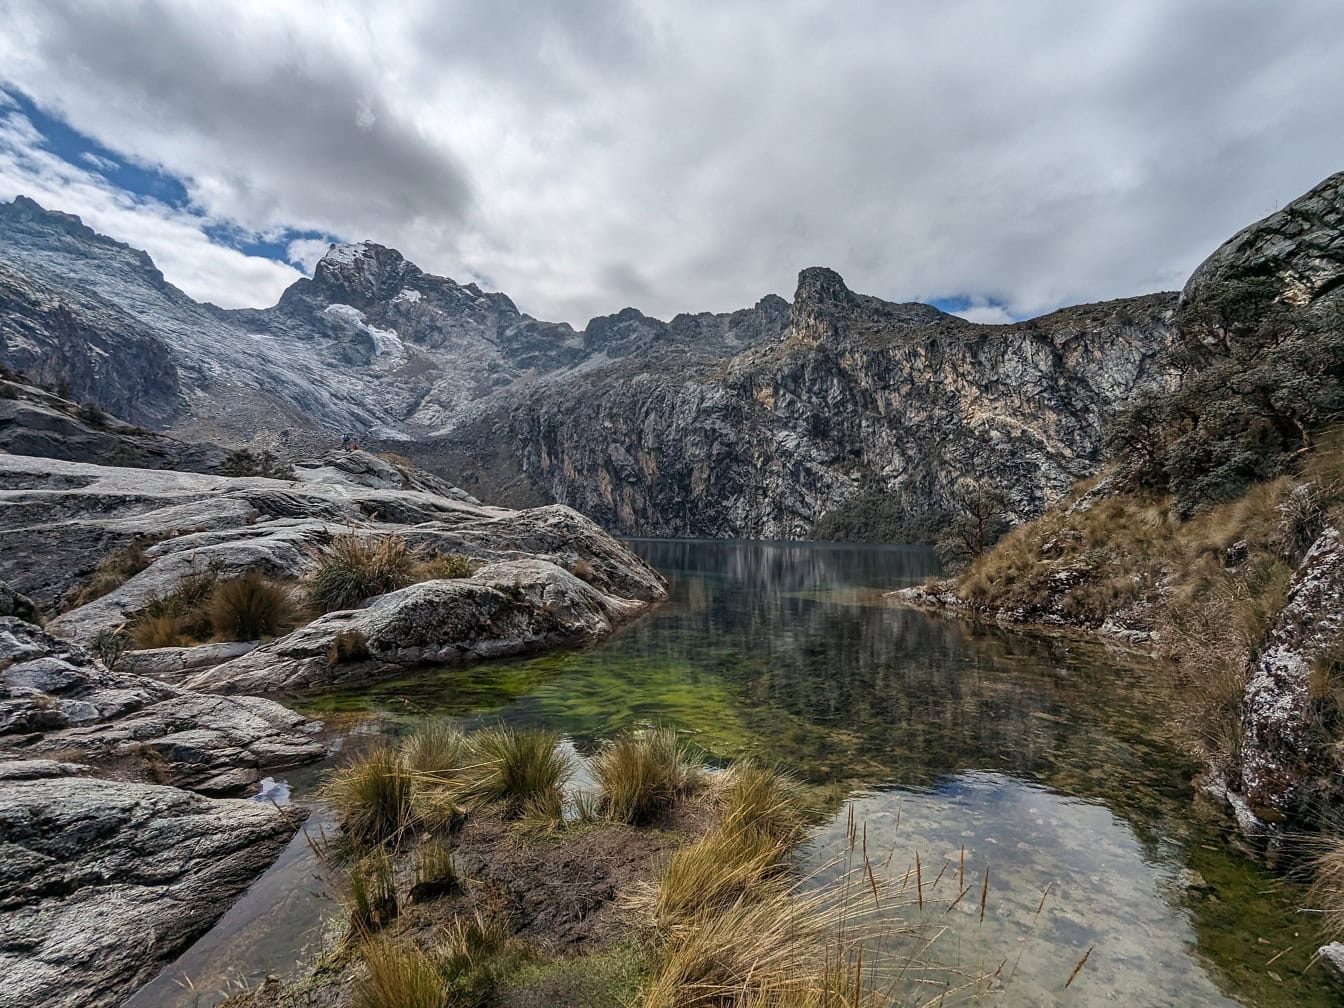 ペルーのワラス近郊のアンデス山脈の自然公園にあるチュラップ湖と雪に覆われた山頂の風景、ラテンアメリカの風光明媚な景色